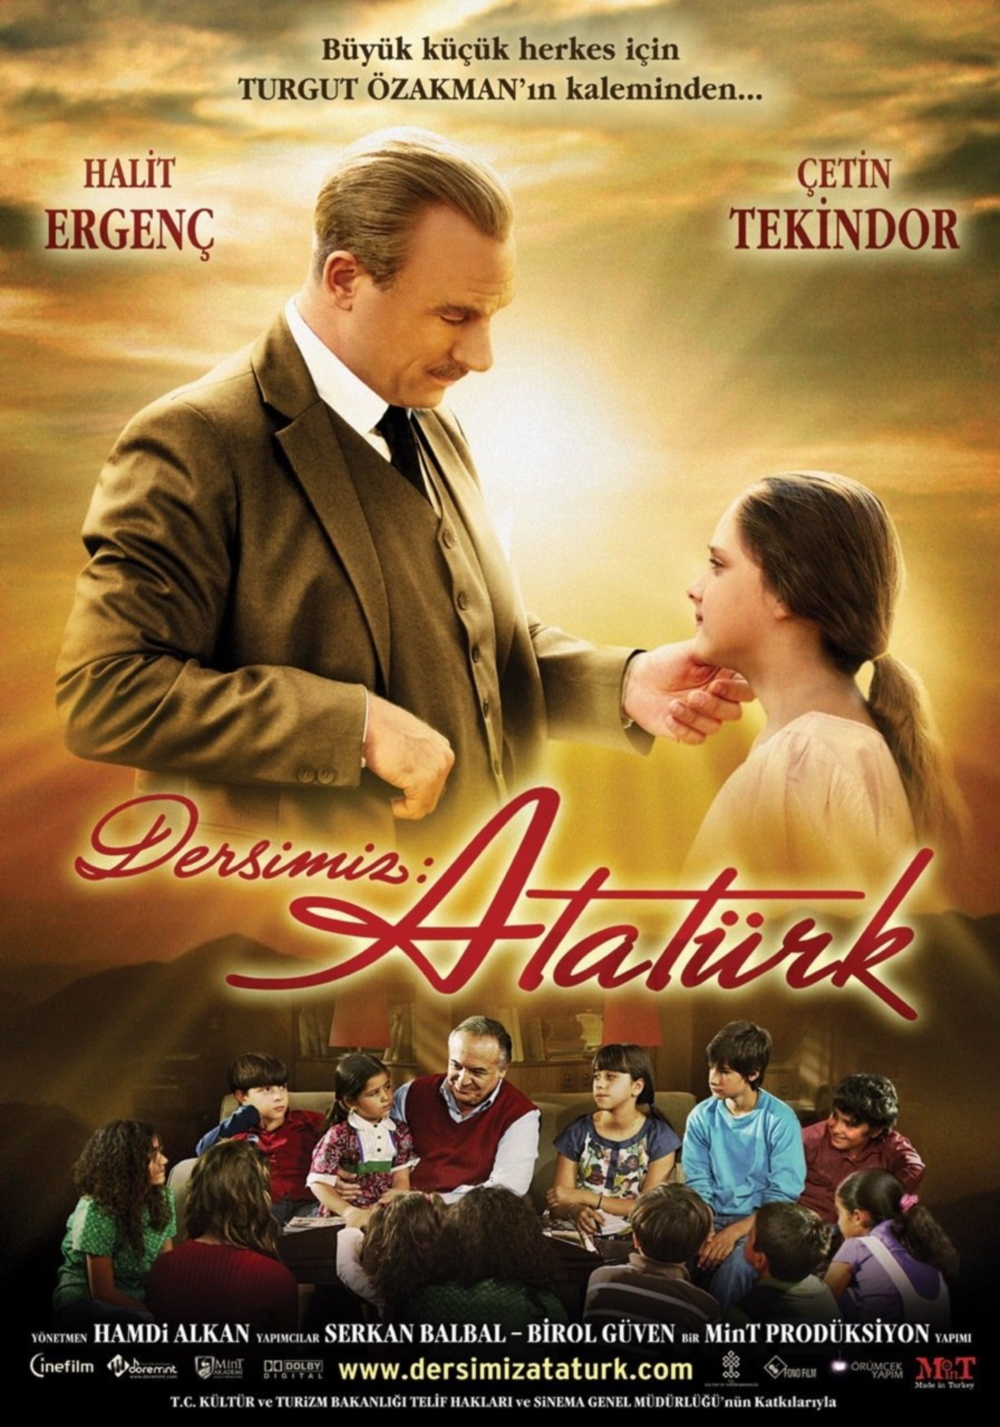 cumhuriyet, film, 29 ekim, atatürk, türkiye